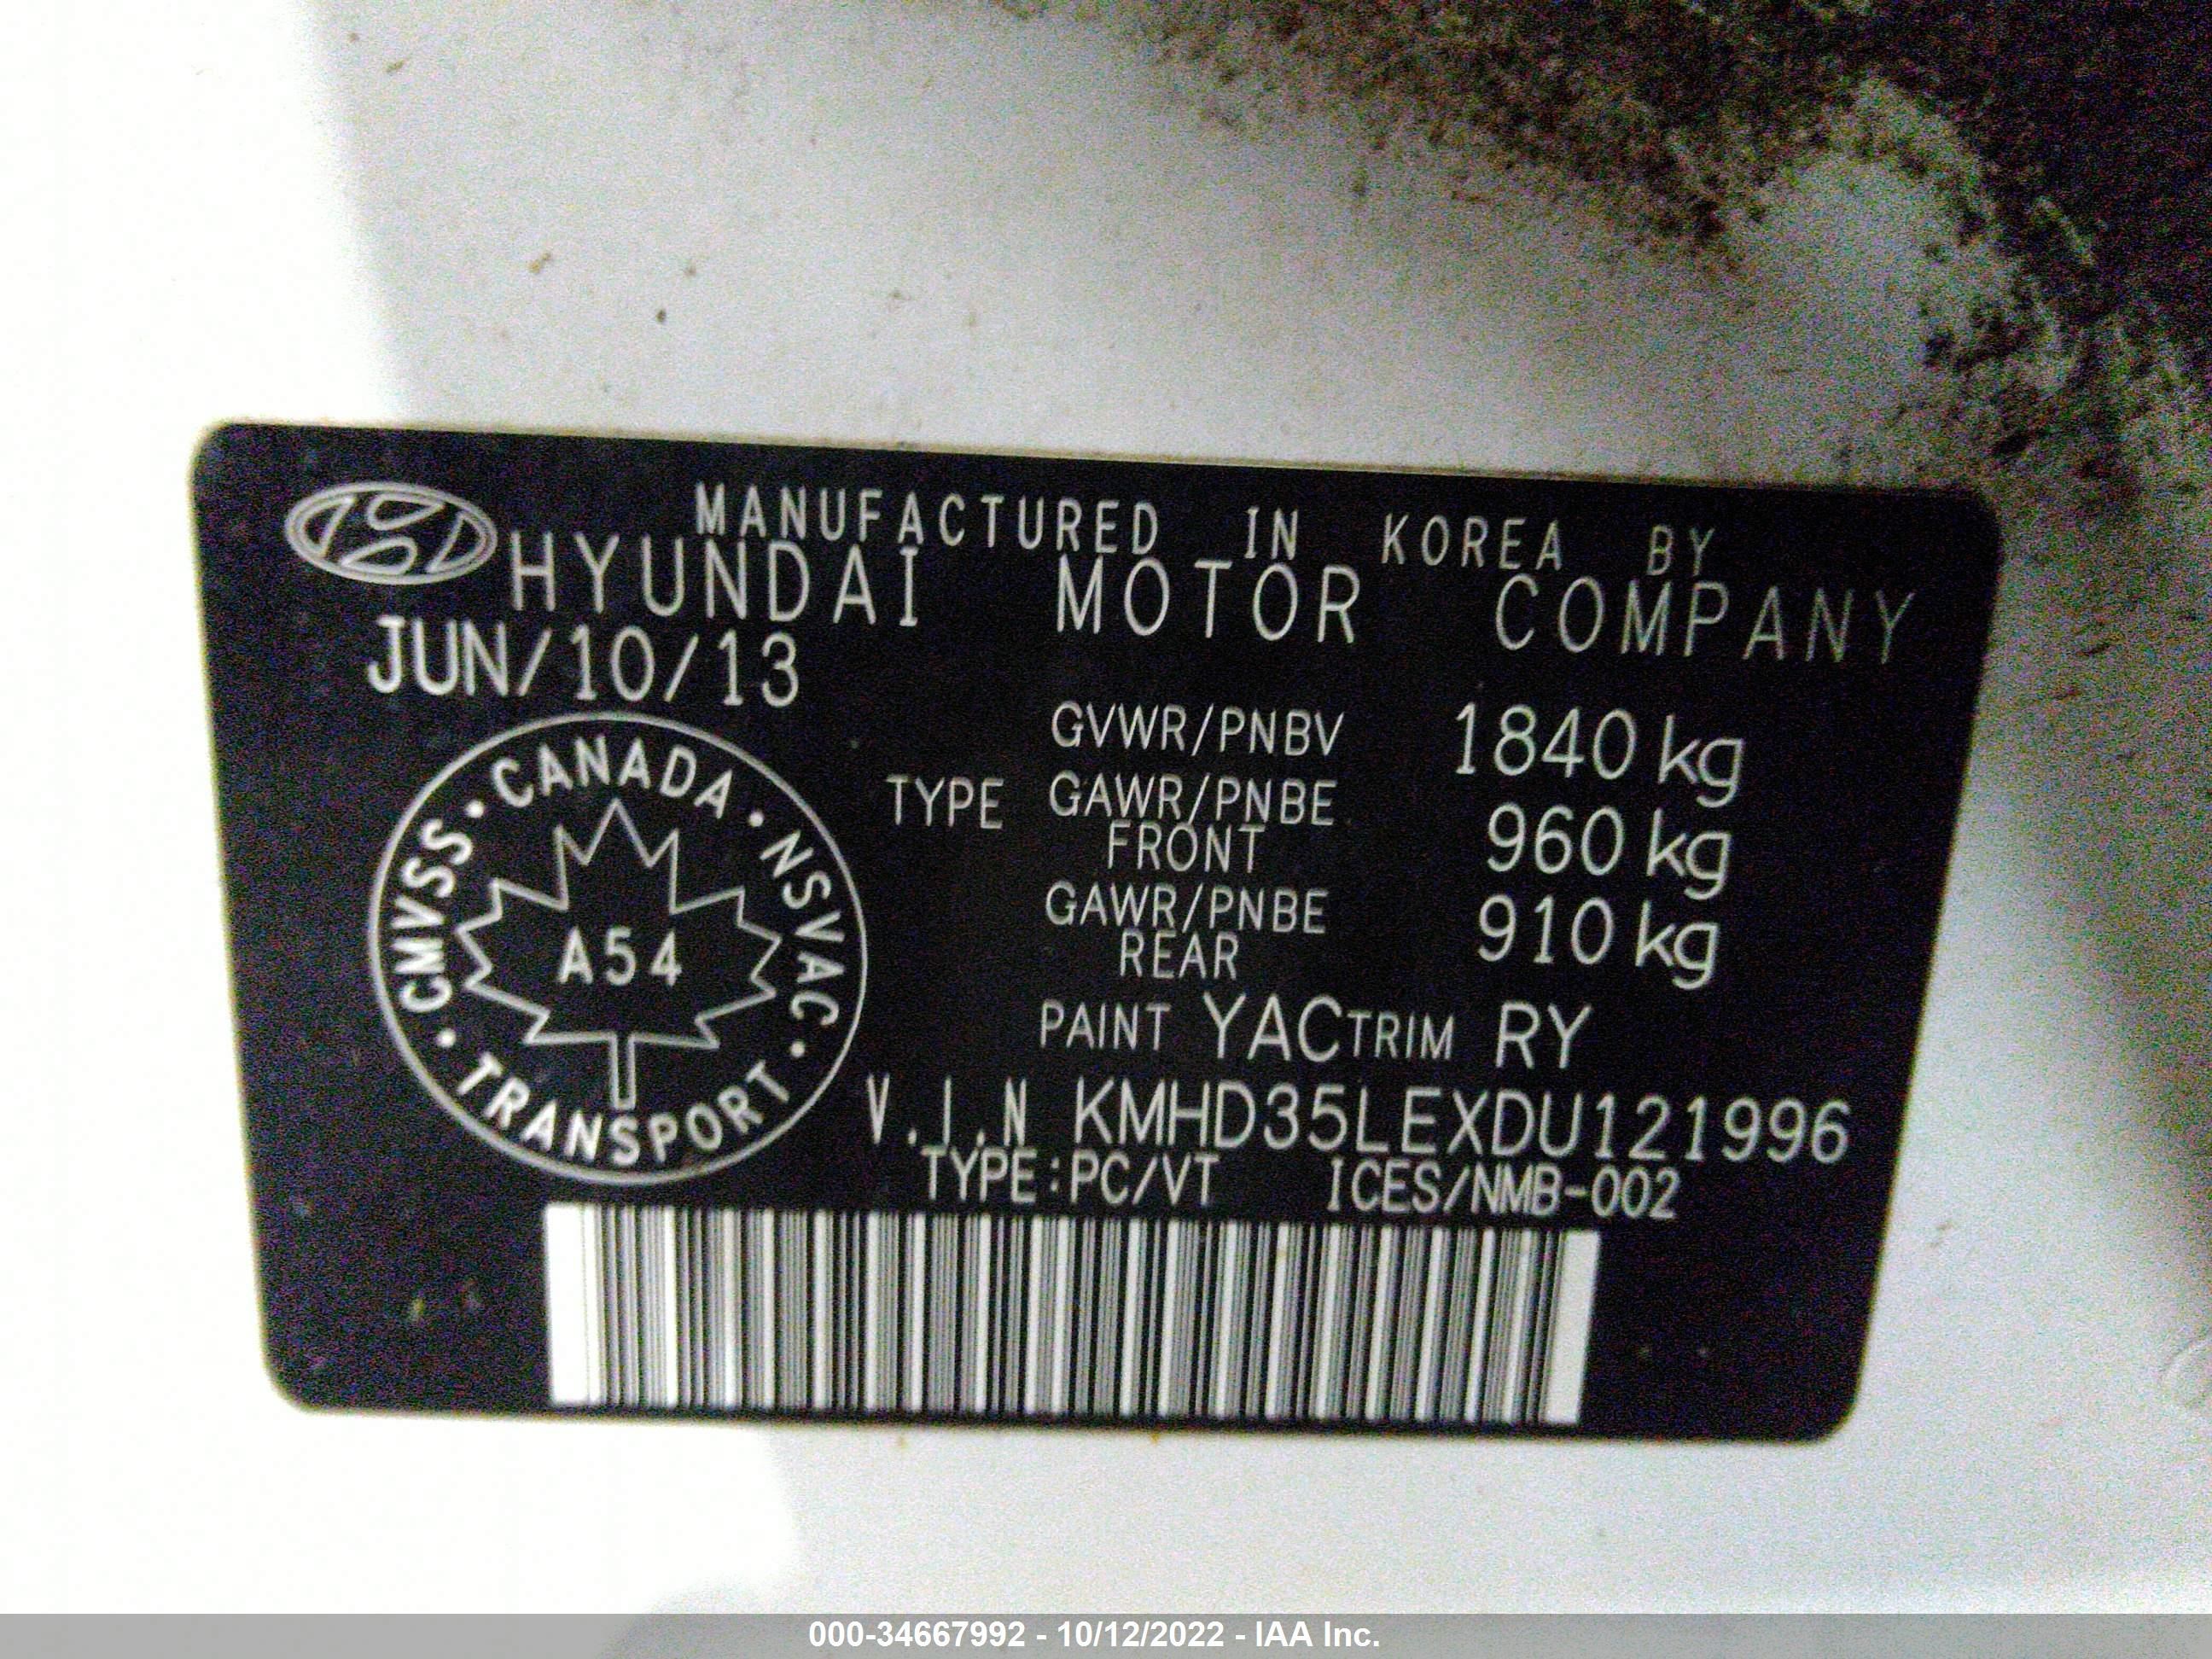 2013 HYUNDAI ELANTRA GT GLS VIN: 00HD35LEXDU121996